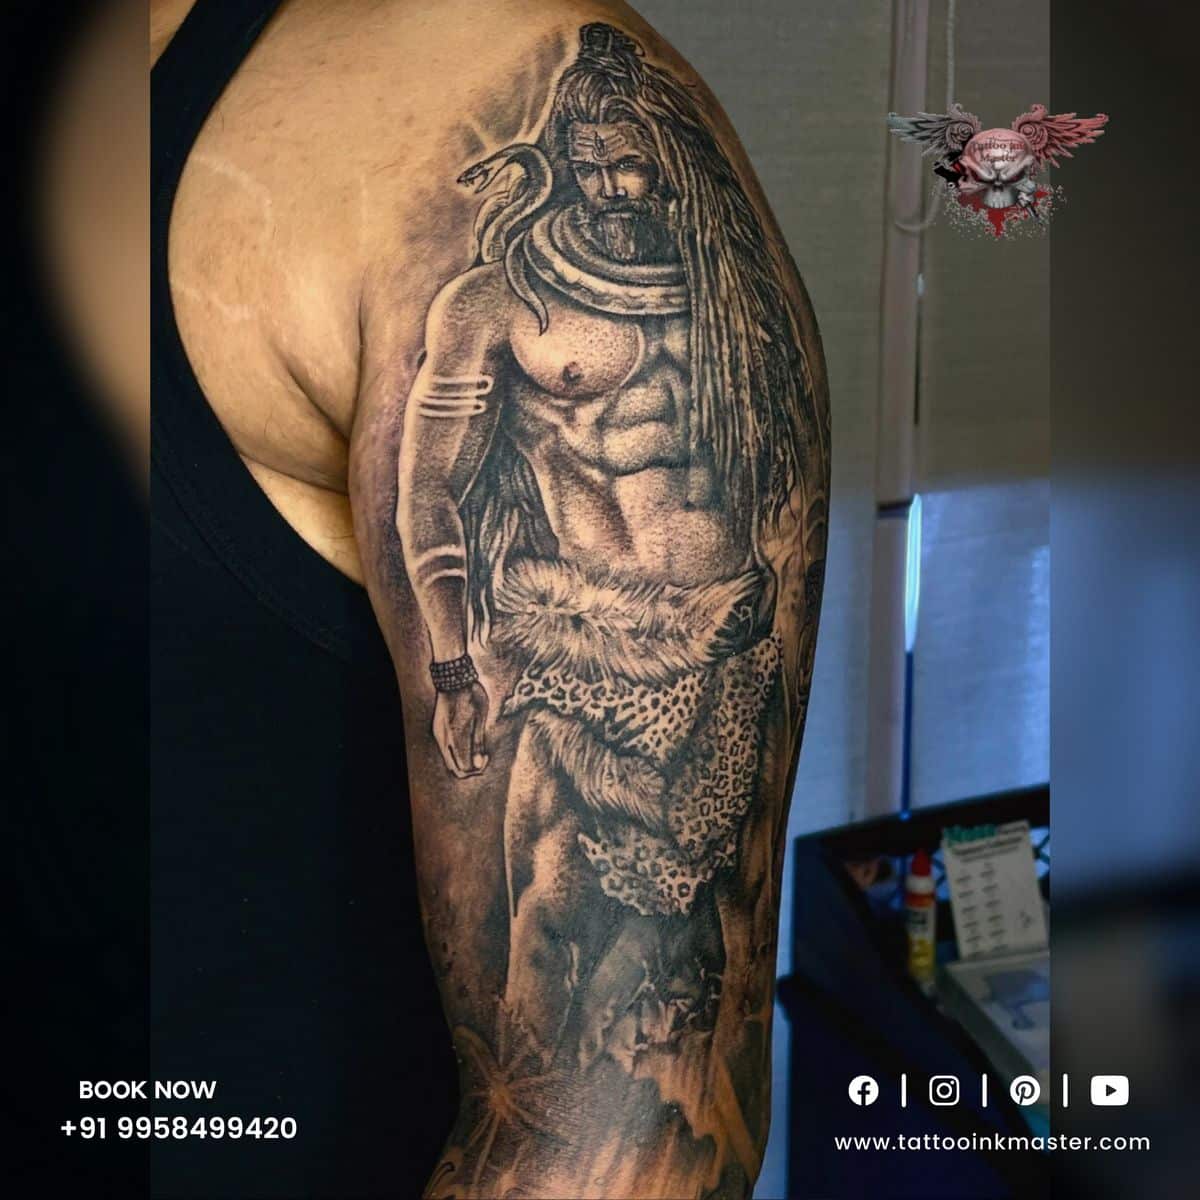 shiva tattoo on arm | Tattoo Ink Master